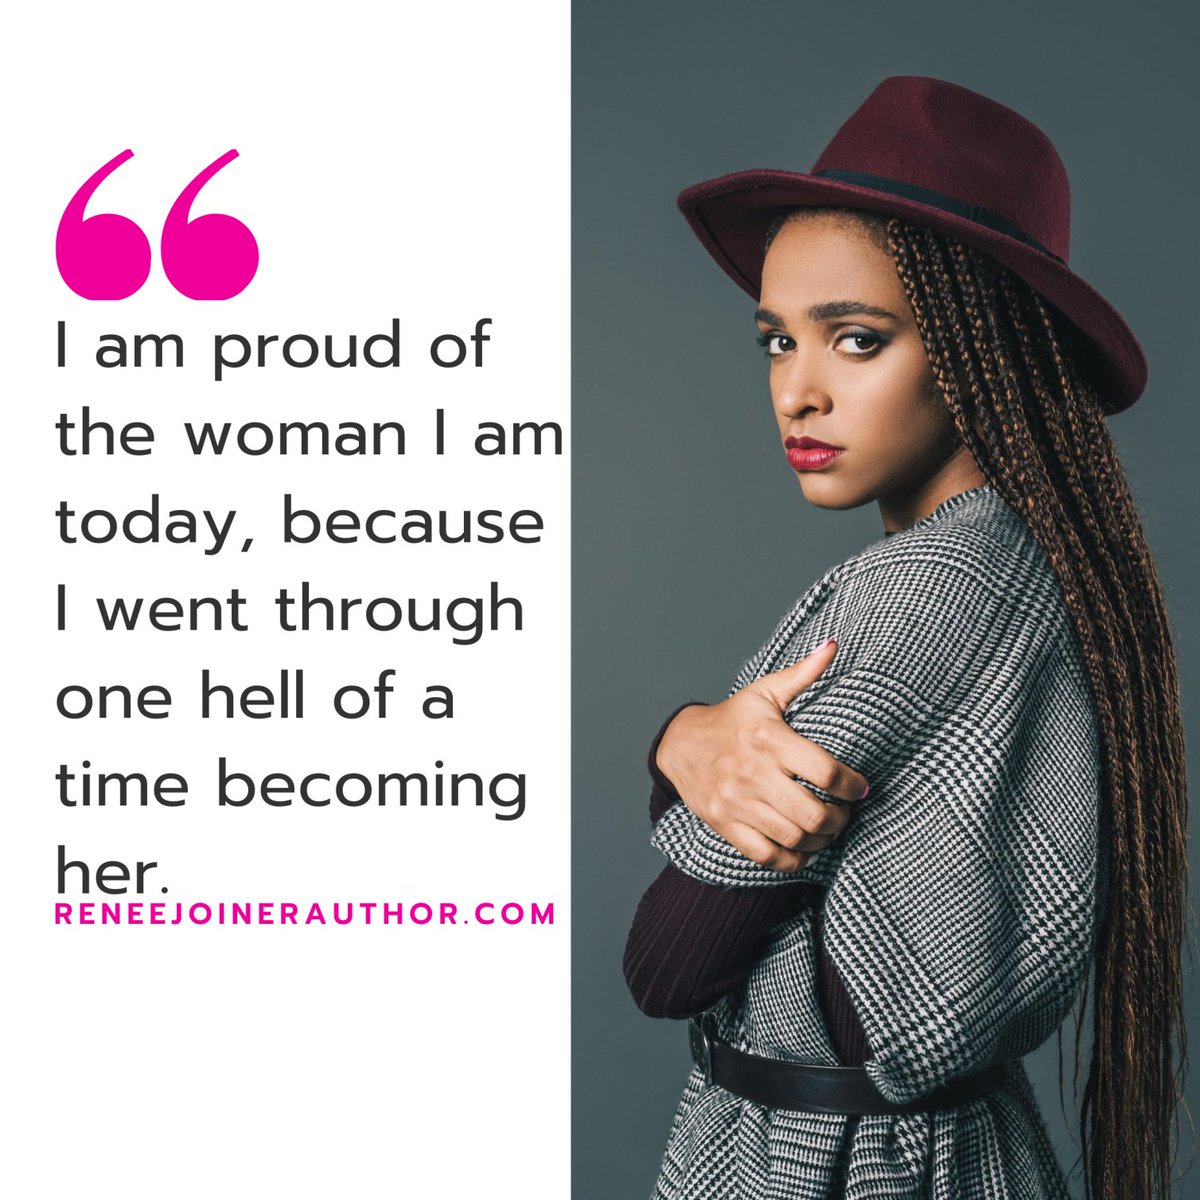 A hell of a lot!
#empoweringwomen #inspirationforyou #inspirationalquote #strongwomen #inspirationalpost #womeninbusiness #inspirationalpeople #women #inspiringwomen #womenempoweringwomen #mondayinspiration #anainspiration #motivational #inspirations #workoutinspiration #women...